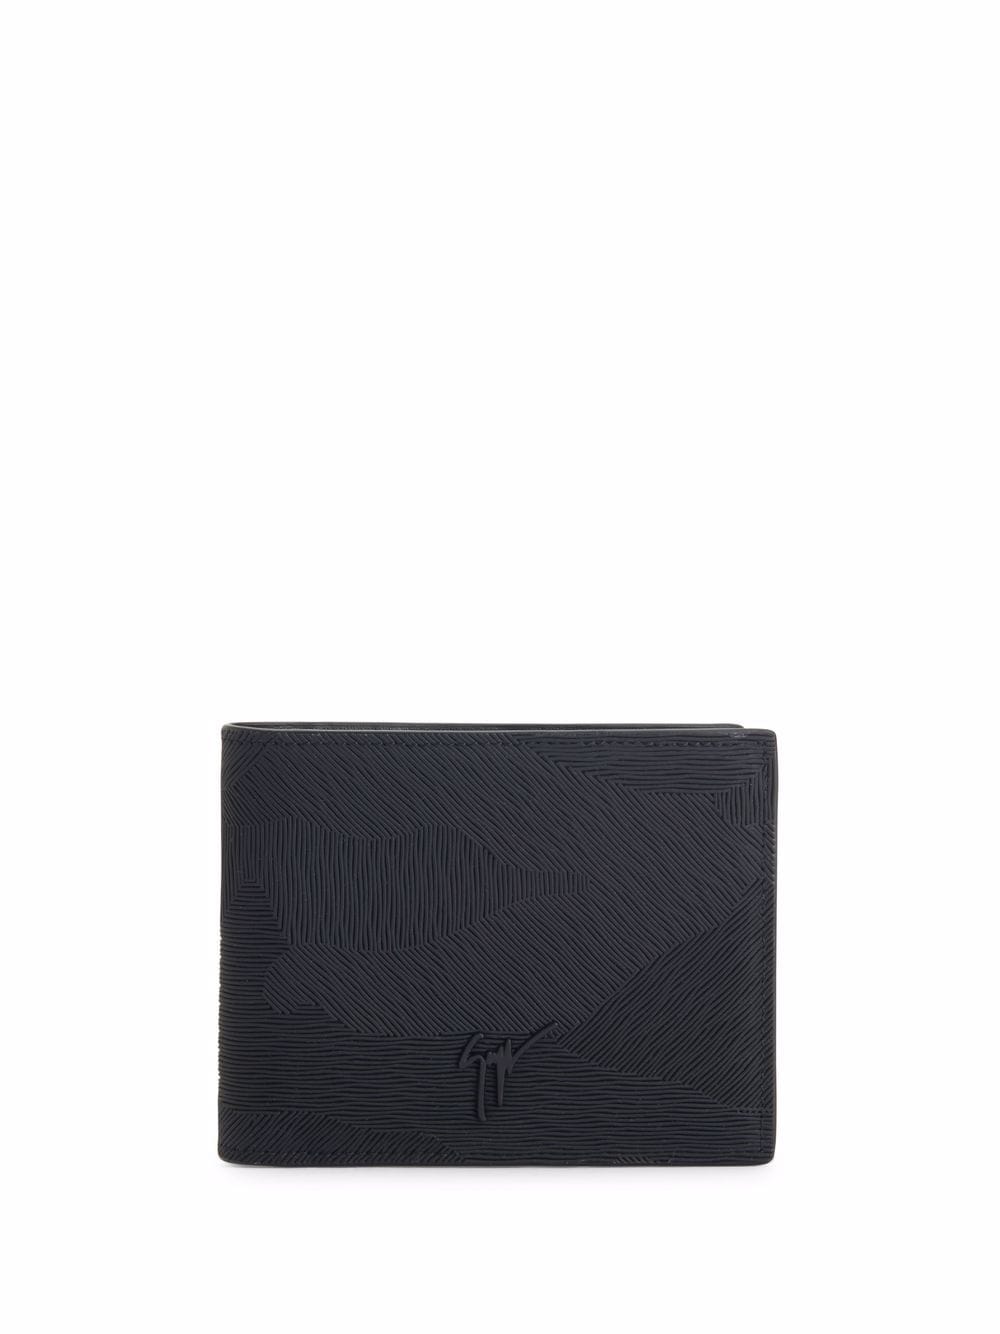 Albert bi-fold leather wallet